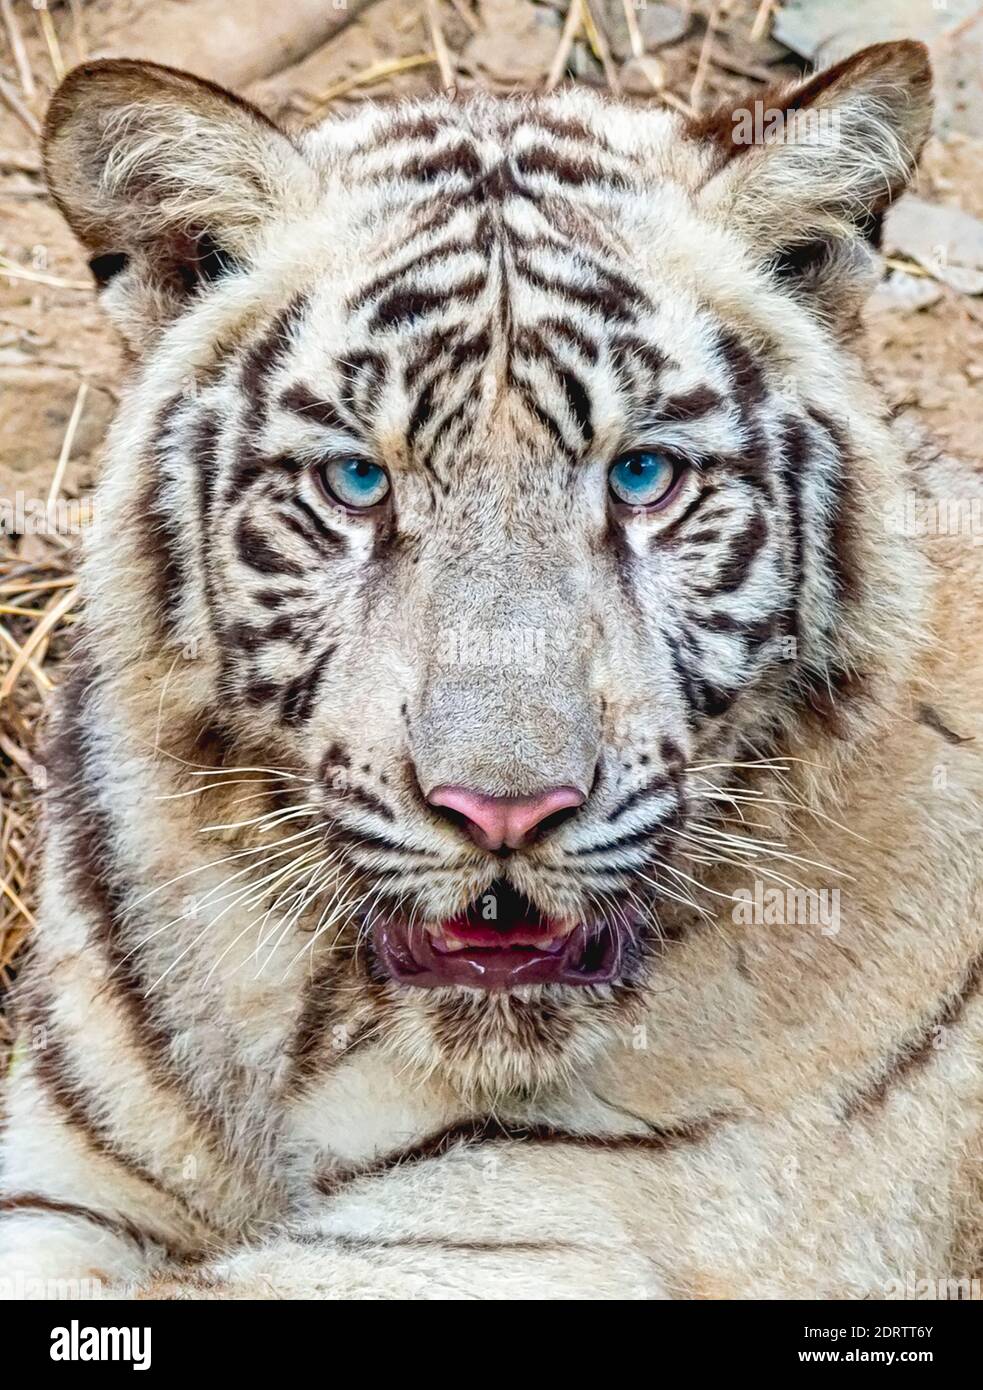 Eine Nahaufnahme des Gesichts/Kopfes eines weißen Tigers im Tigergehege im National Zoological Park Delhi, auch bekannt als Delhi Zoo. Stockfoto